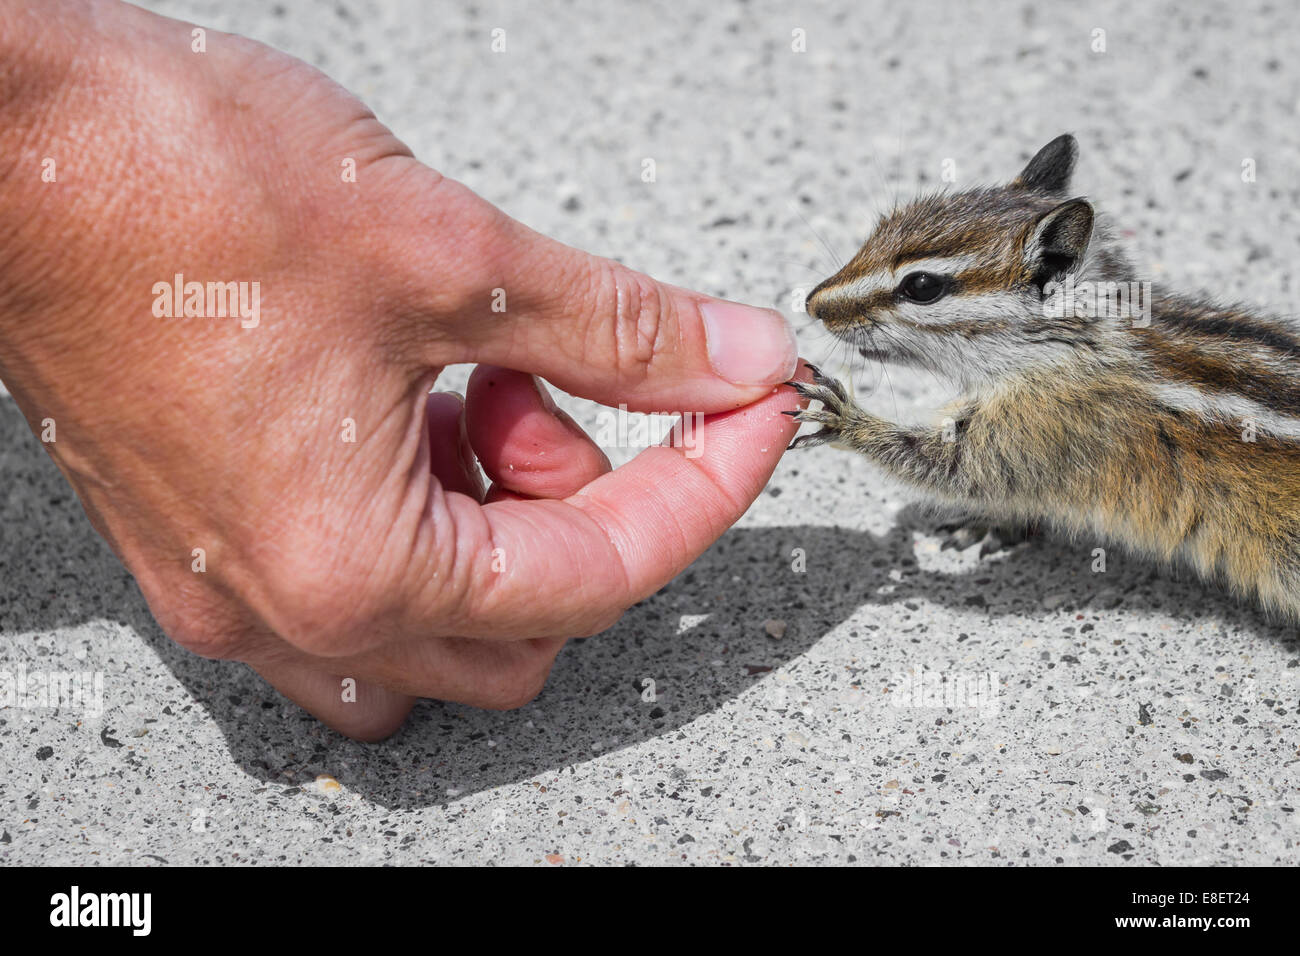 Close up of female hands nourrir les écrous pour un wild chipmunk Banque D'Images